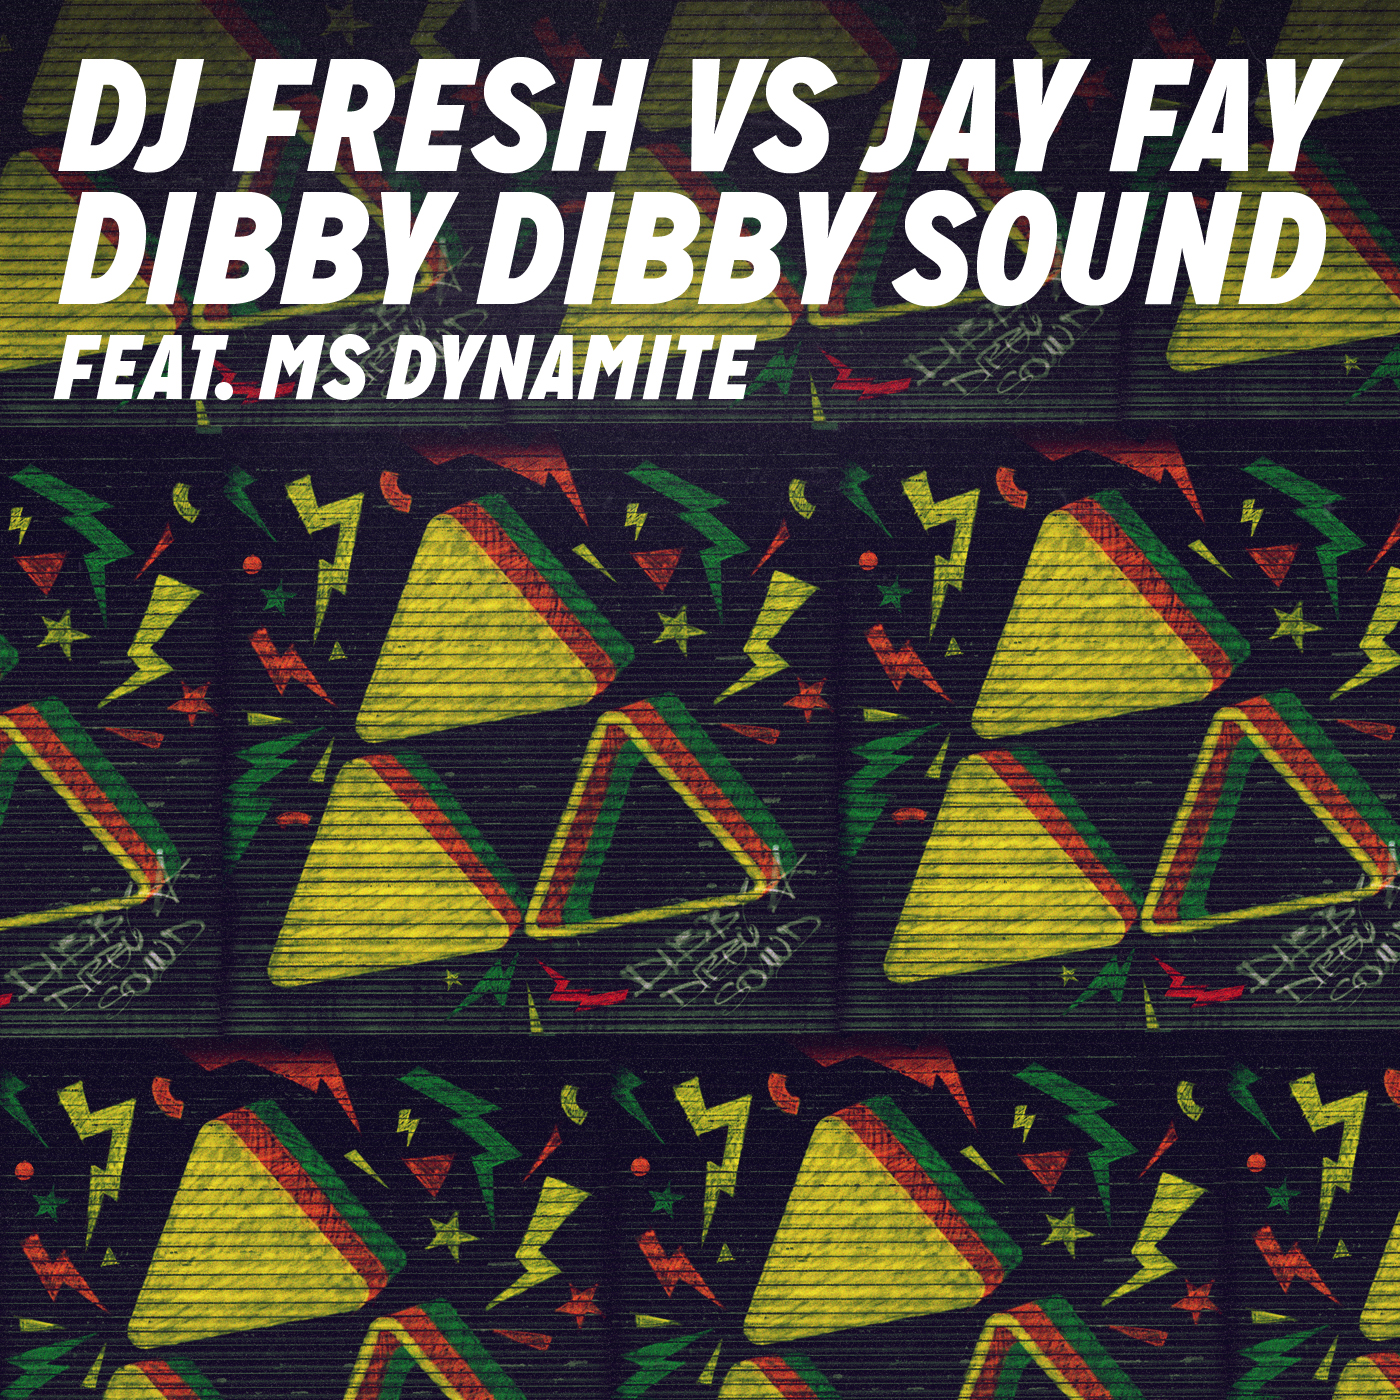 DJ Fresh vs Jay Fay – Dibby Dibby Sound ft. Ms. Dynamite